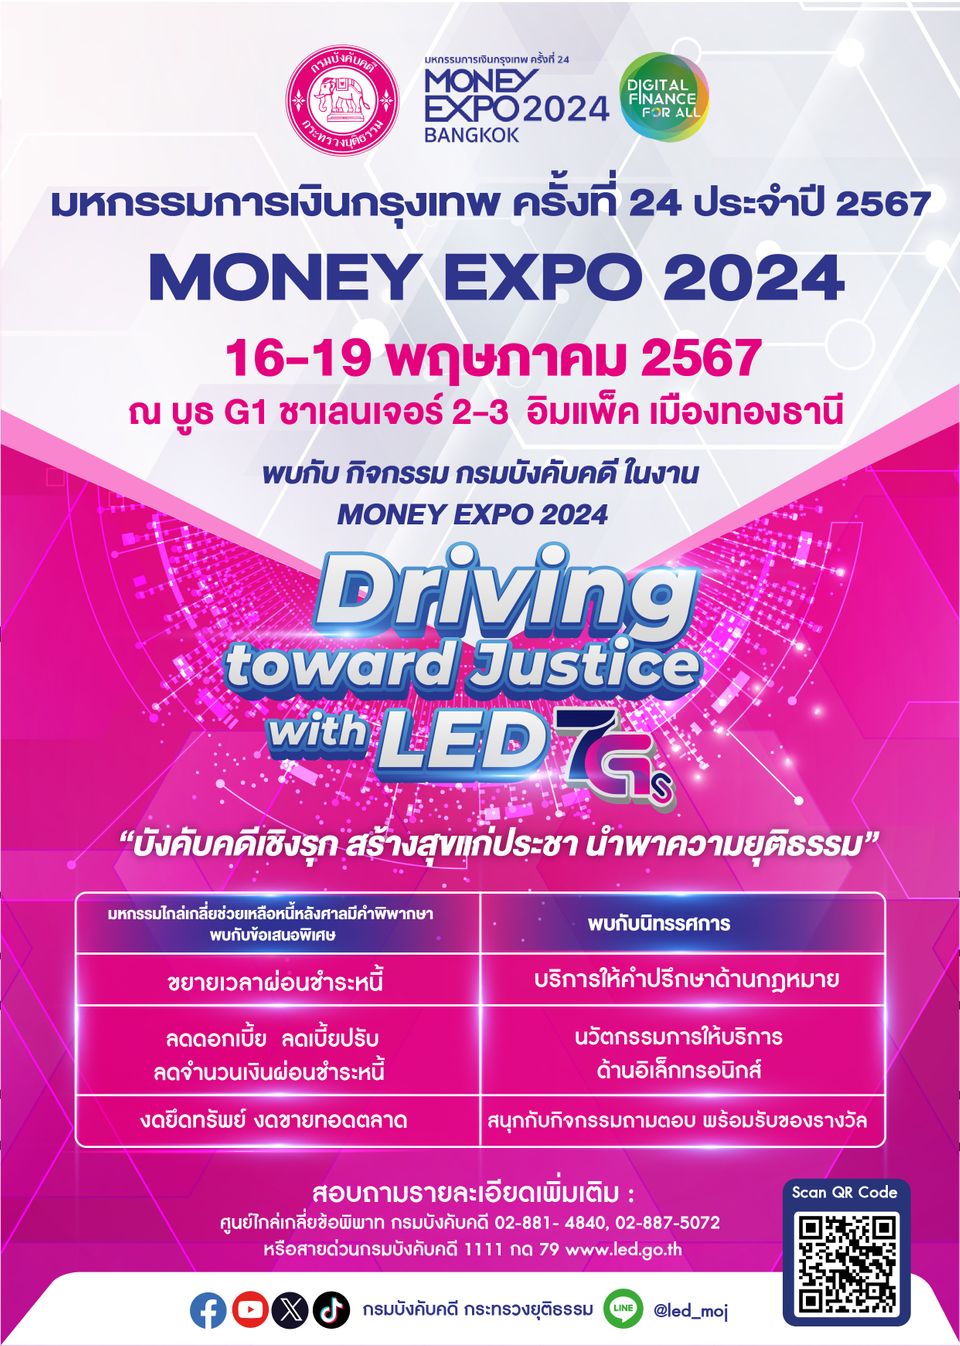 กรมบังคับคดีร่วมออกบูธงาน “MONEY EXPO 2024” ชูแนวคิด "บังคับคดีเชิงรุก สร้างสุขแก่ประชา นำพาความยุติธรรม”